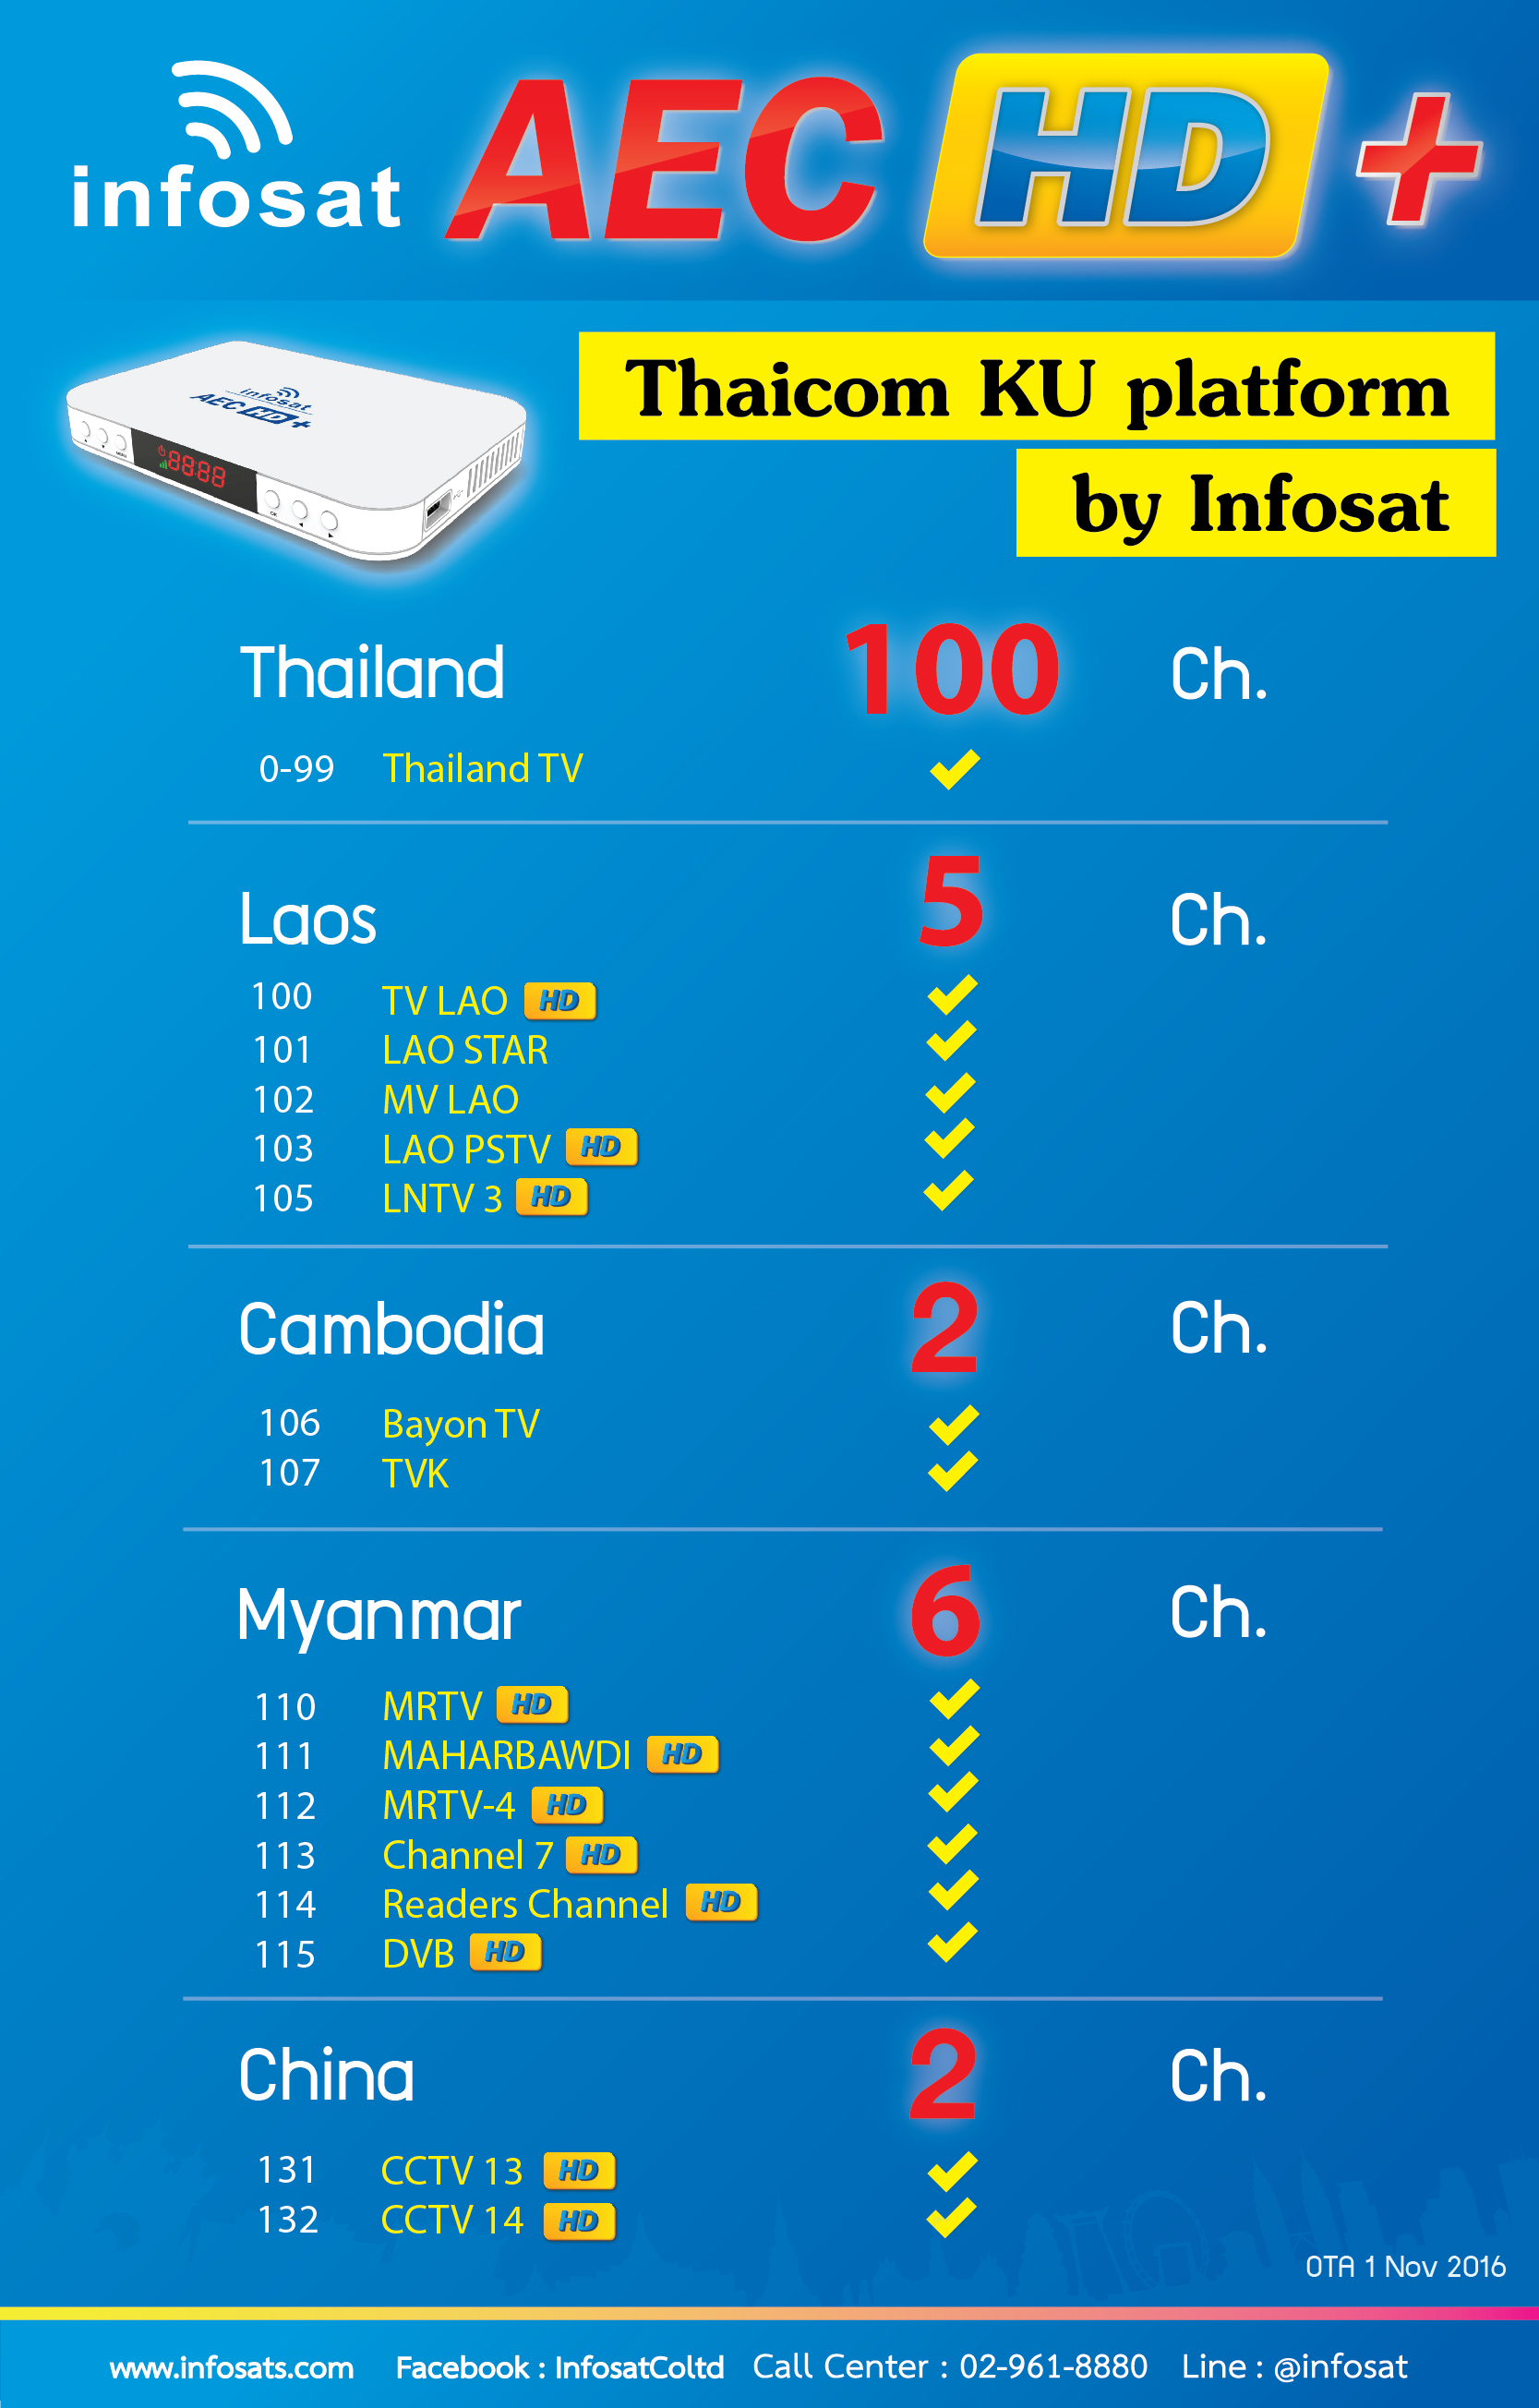 Thaicom KU Platform by Infosat